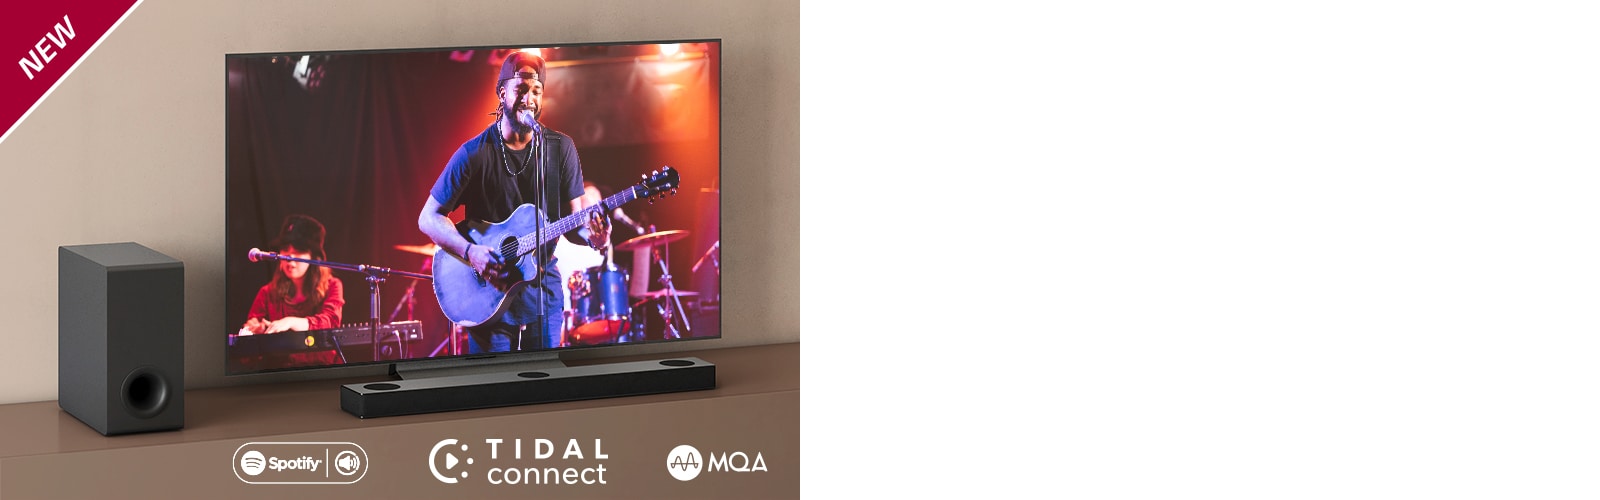 De LG TV staat op een bruine plank, de LG Soundbar S75Q wordt voor de tv geplaatst. De subwoofer wordt links van de tv geplaatst. Tv toont een concertscène. In de linkerbovenhoek staat NEW mark.